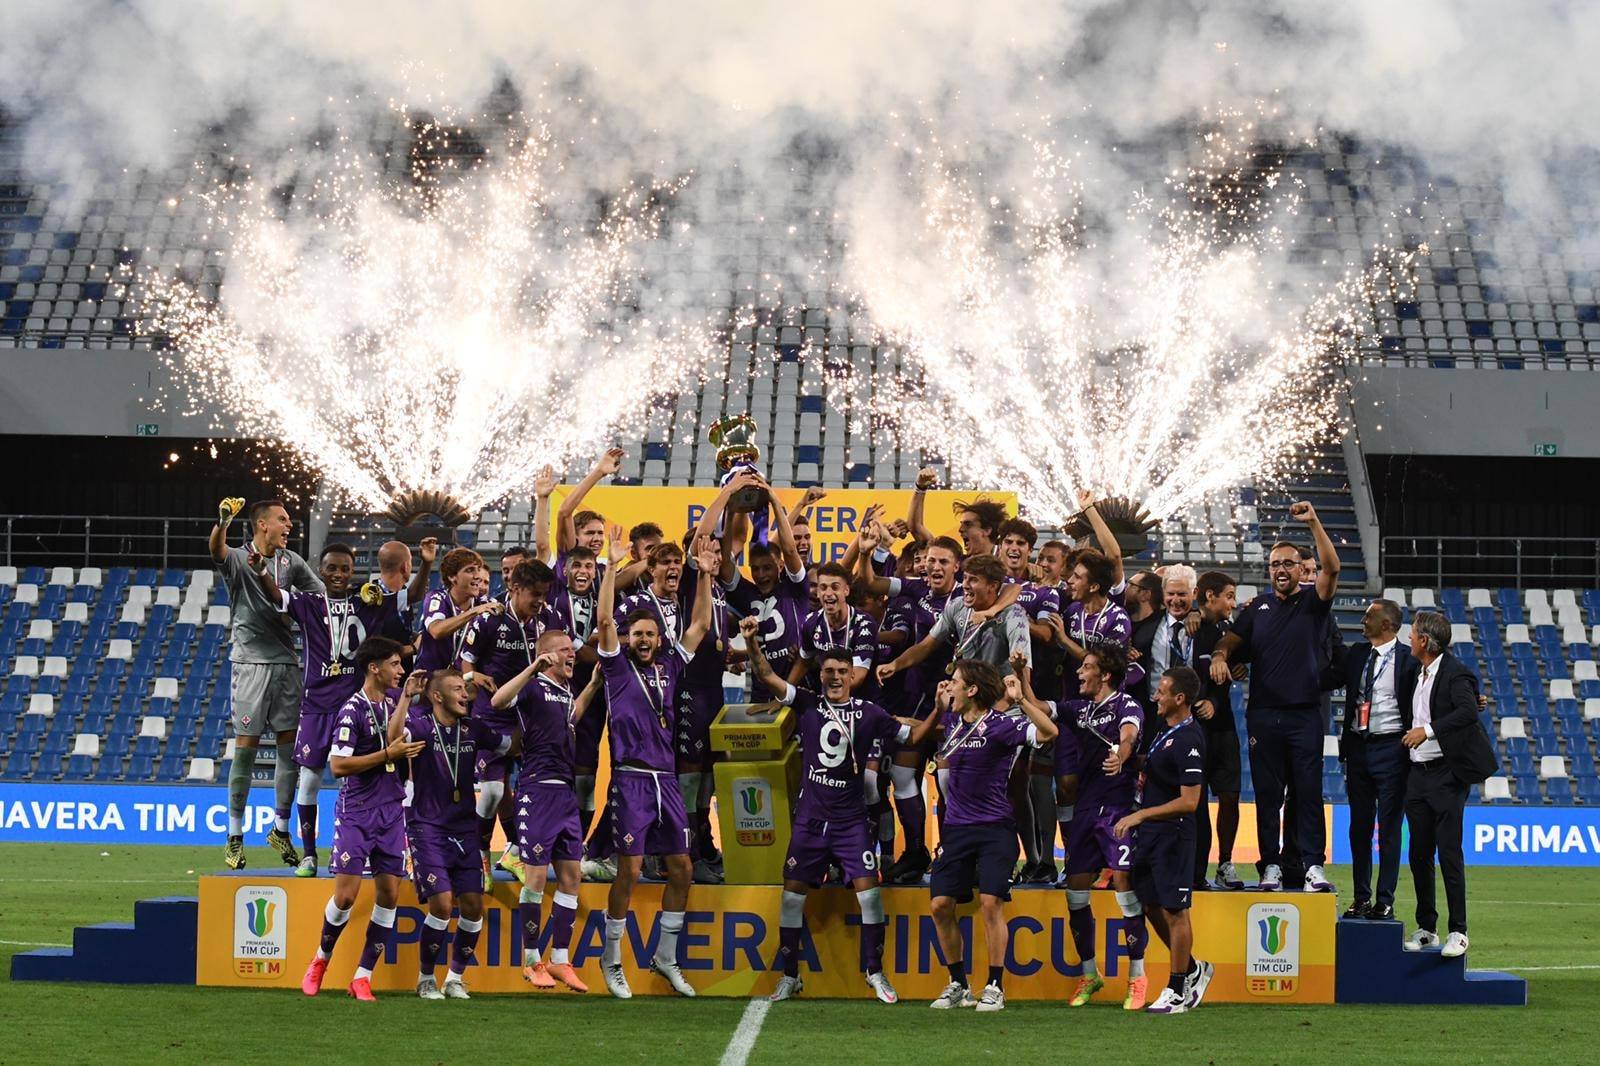 Riparte il Campionato Primavera, Fiorentina-Bologna il 19/09. Contro la Juve il 19/12. Il calendario completo